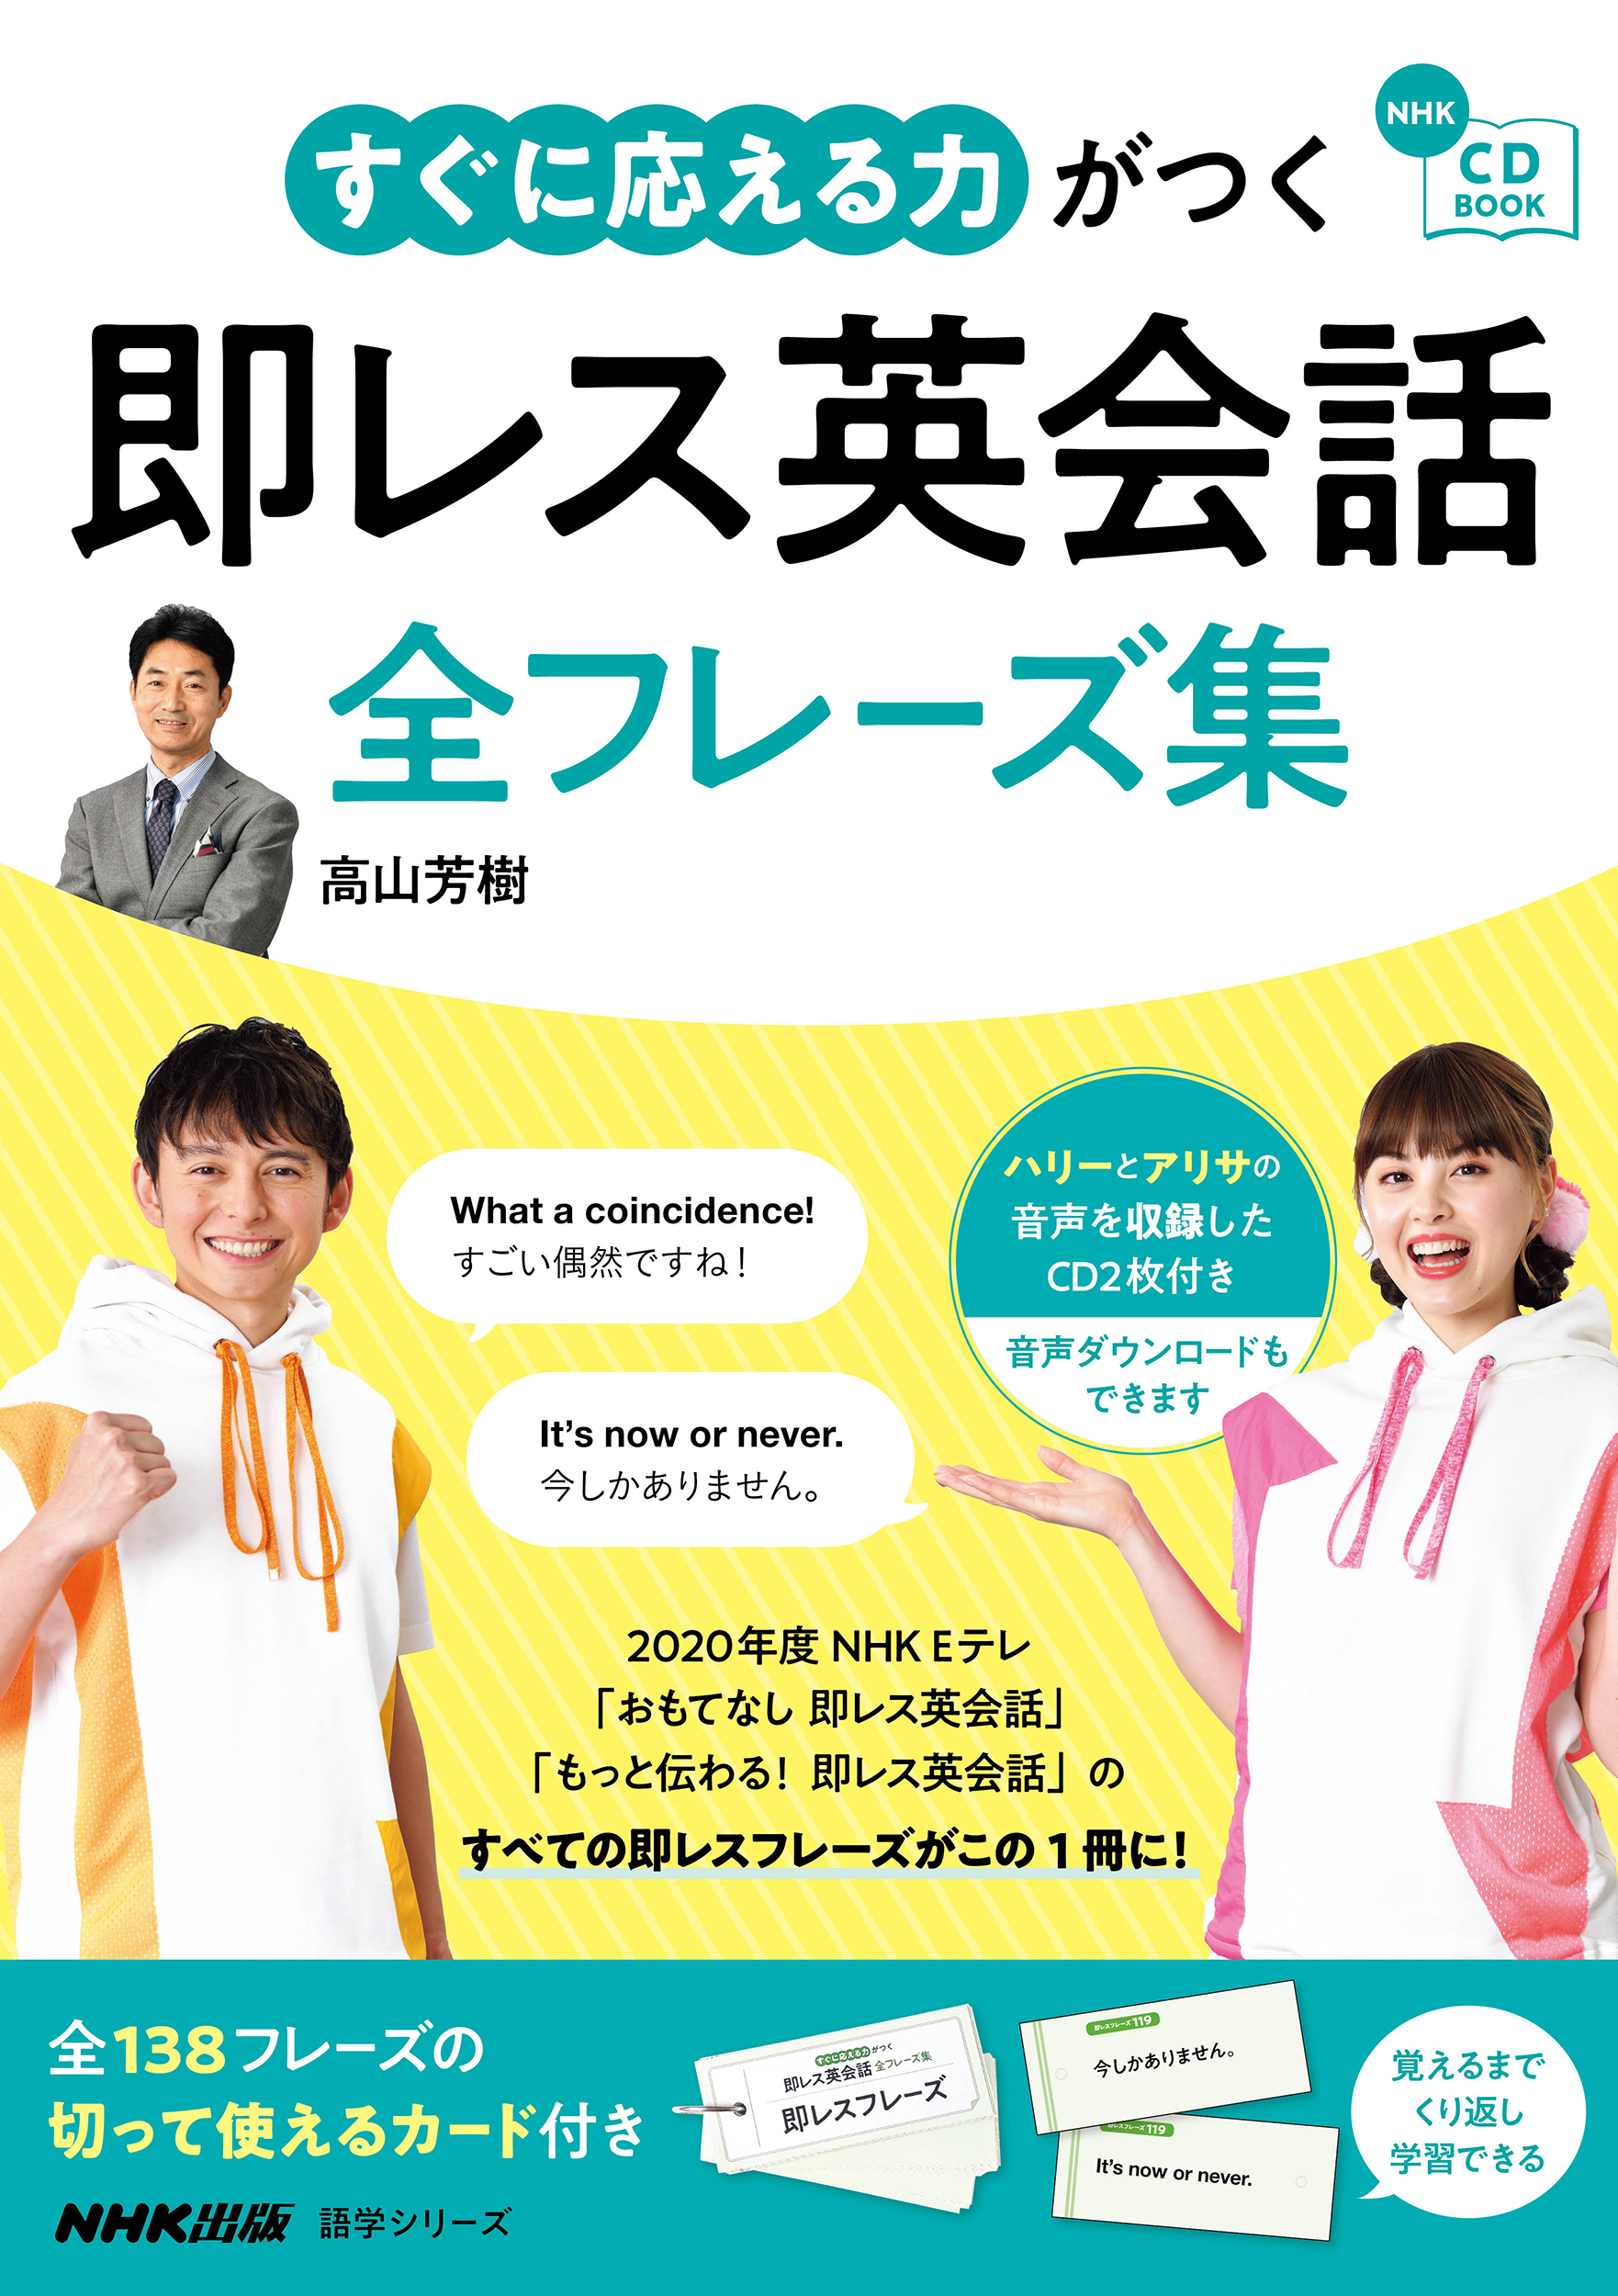 NHK　CD　BOOK　すぐに応える力がつく　即レス英会話　全フレーズ集の商品画像